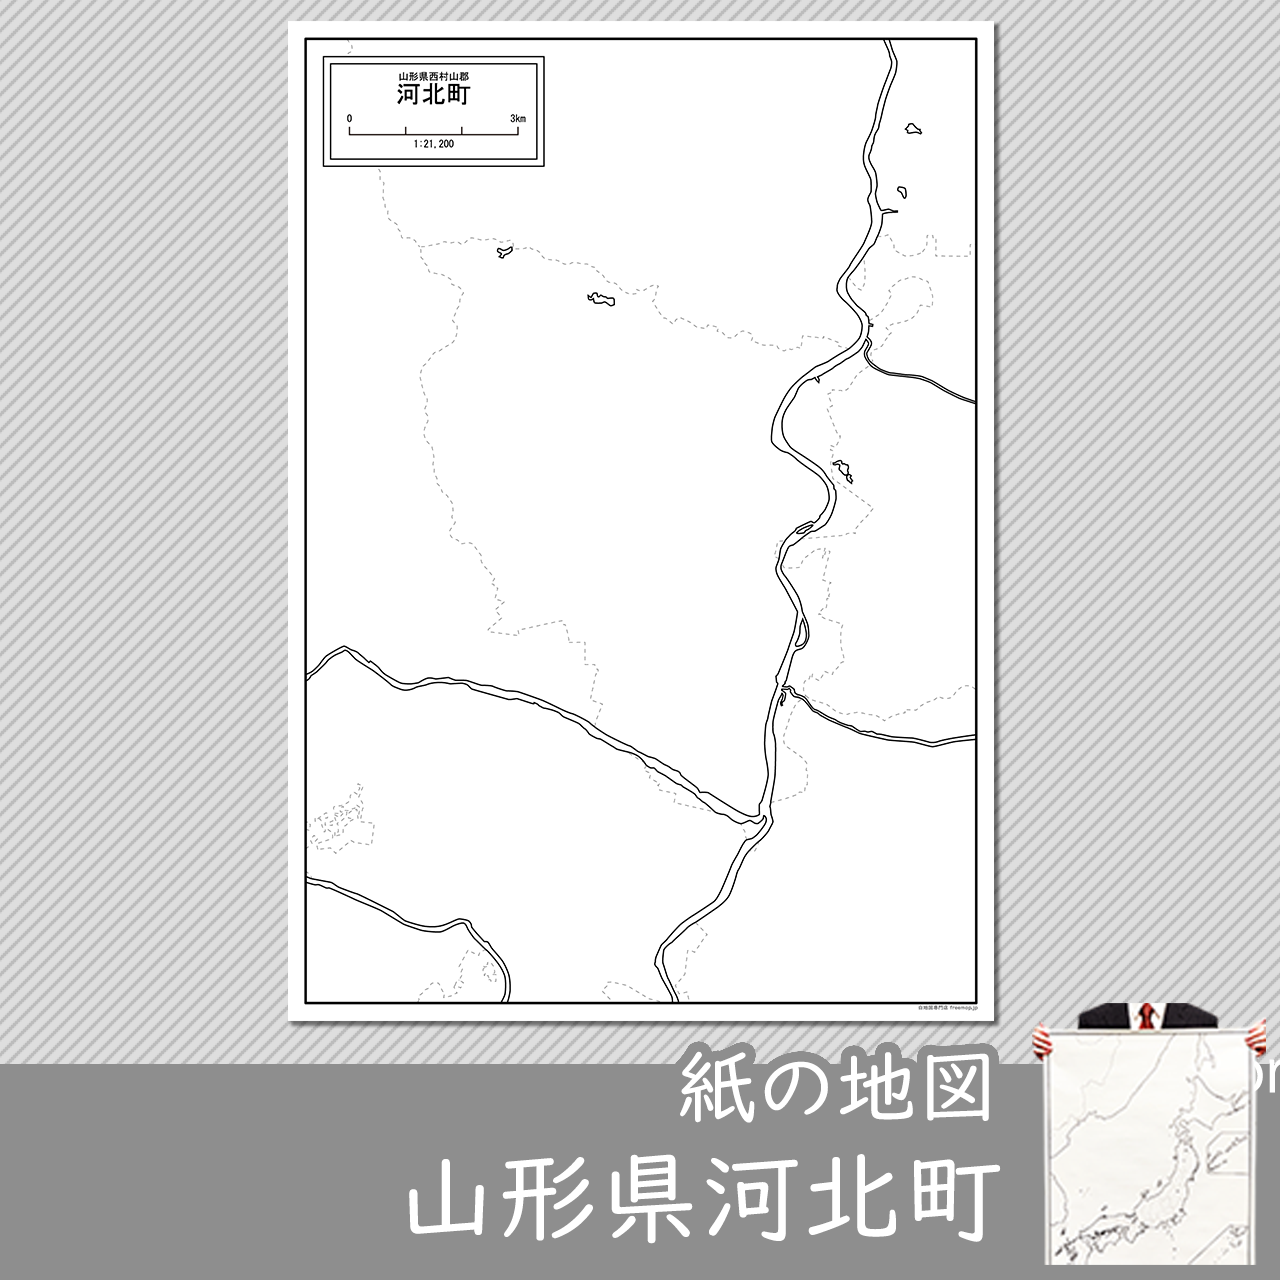 河北町の紙の白地図のサムネイル